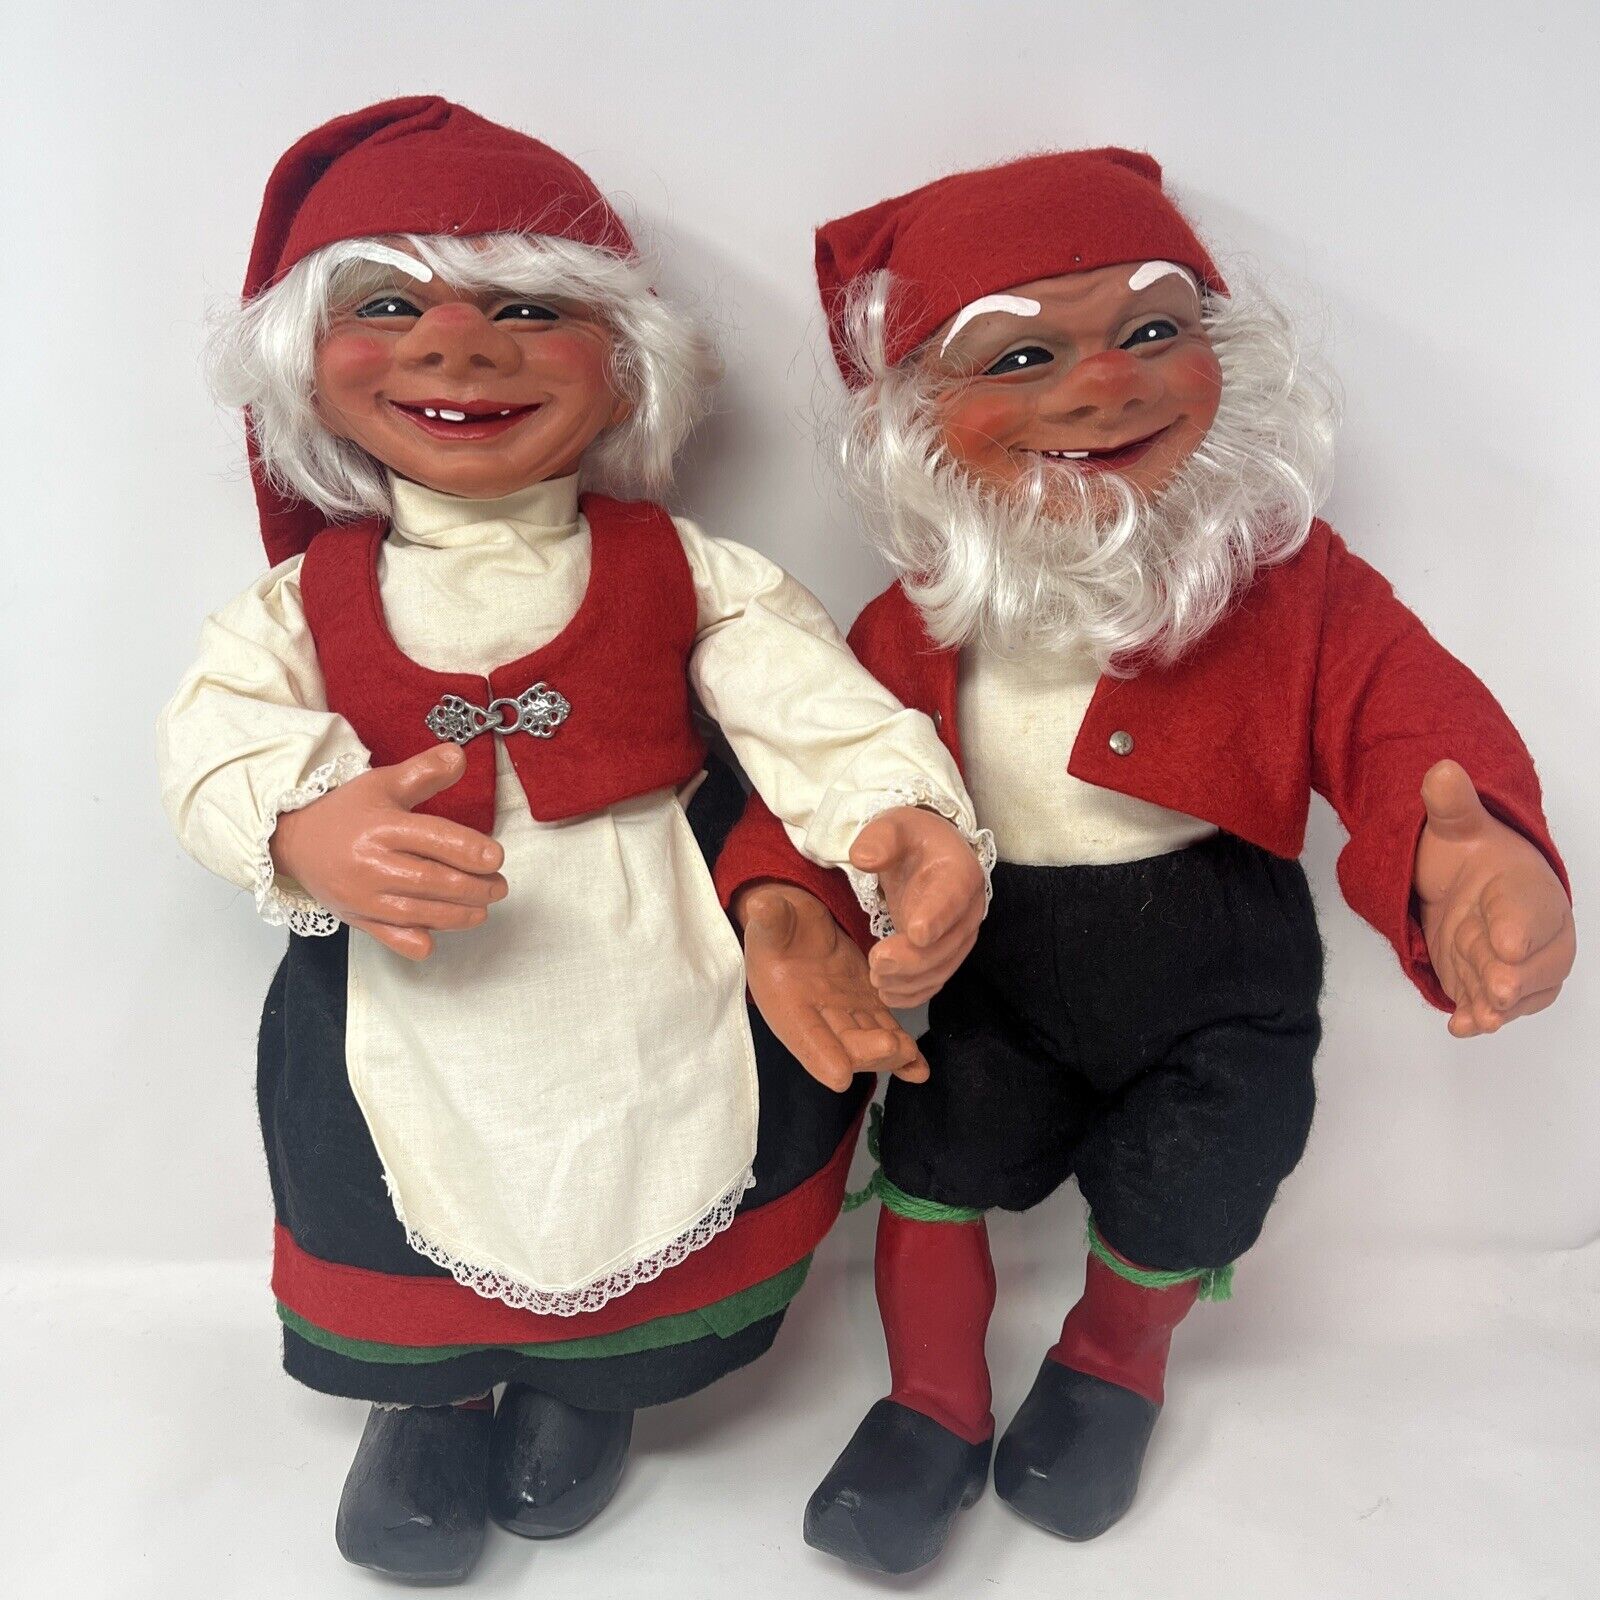 2 Arne Hasle Latex Norge Large 16”  Christmas Elf Doll Vintage Troll Norwegian